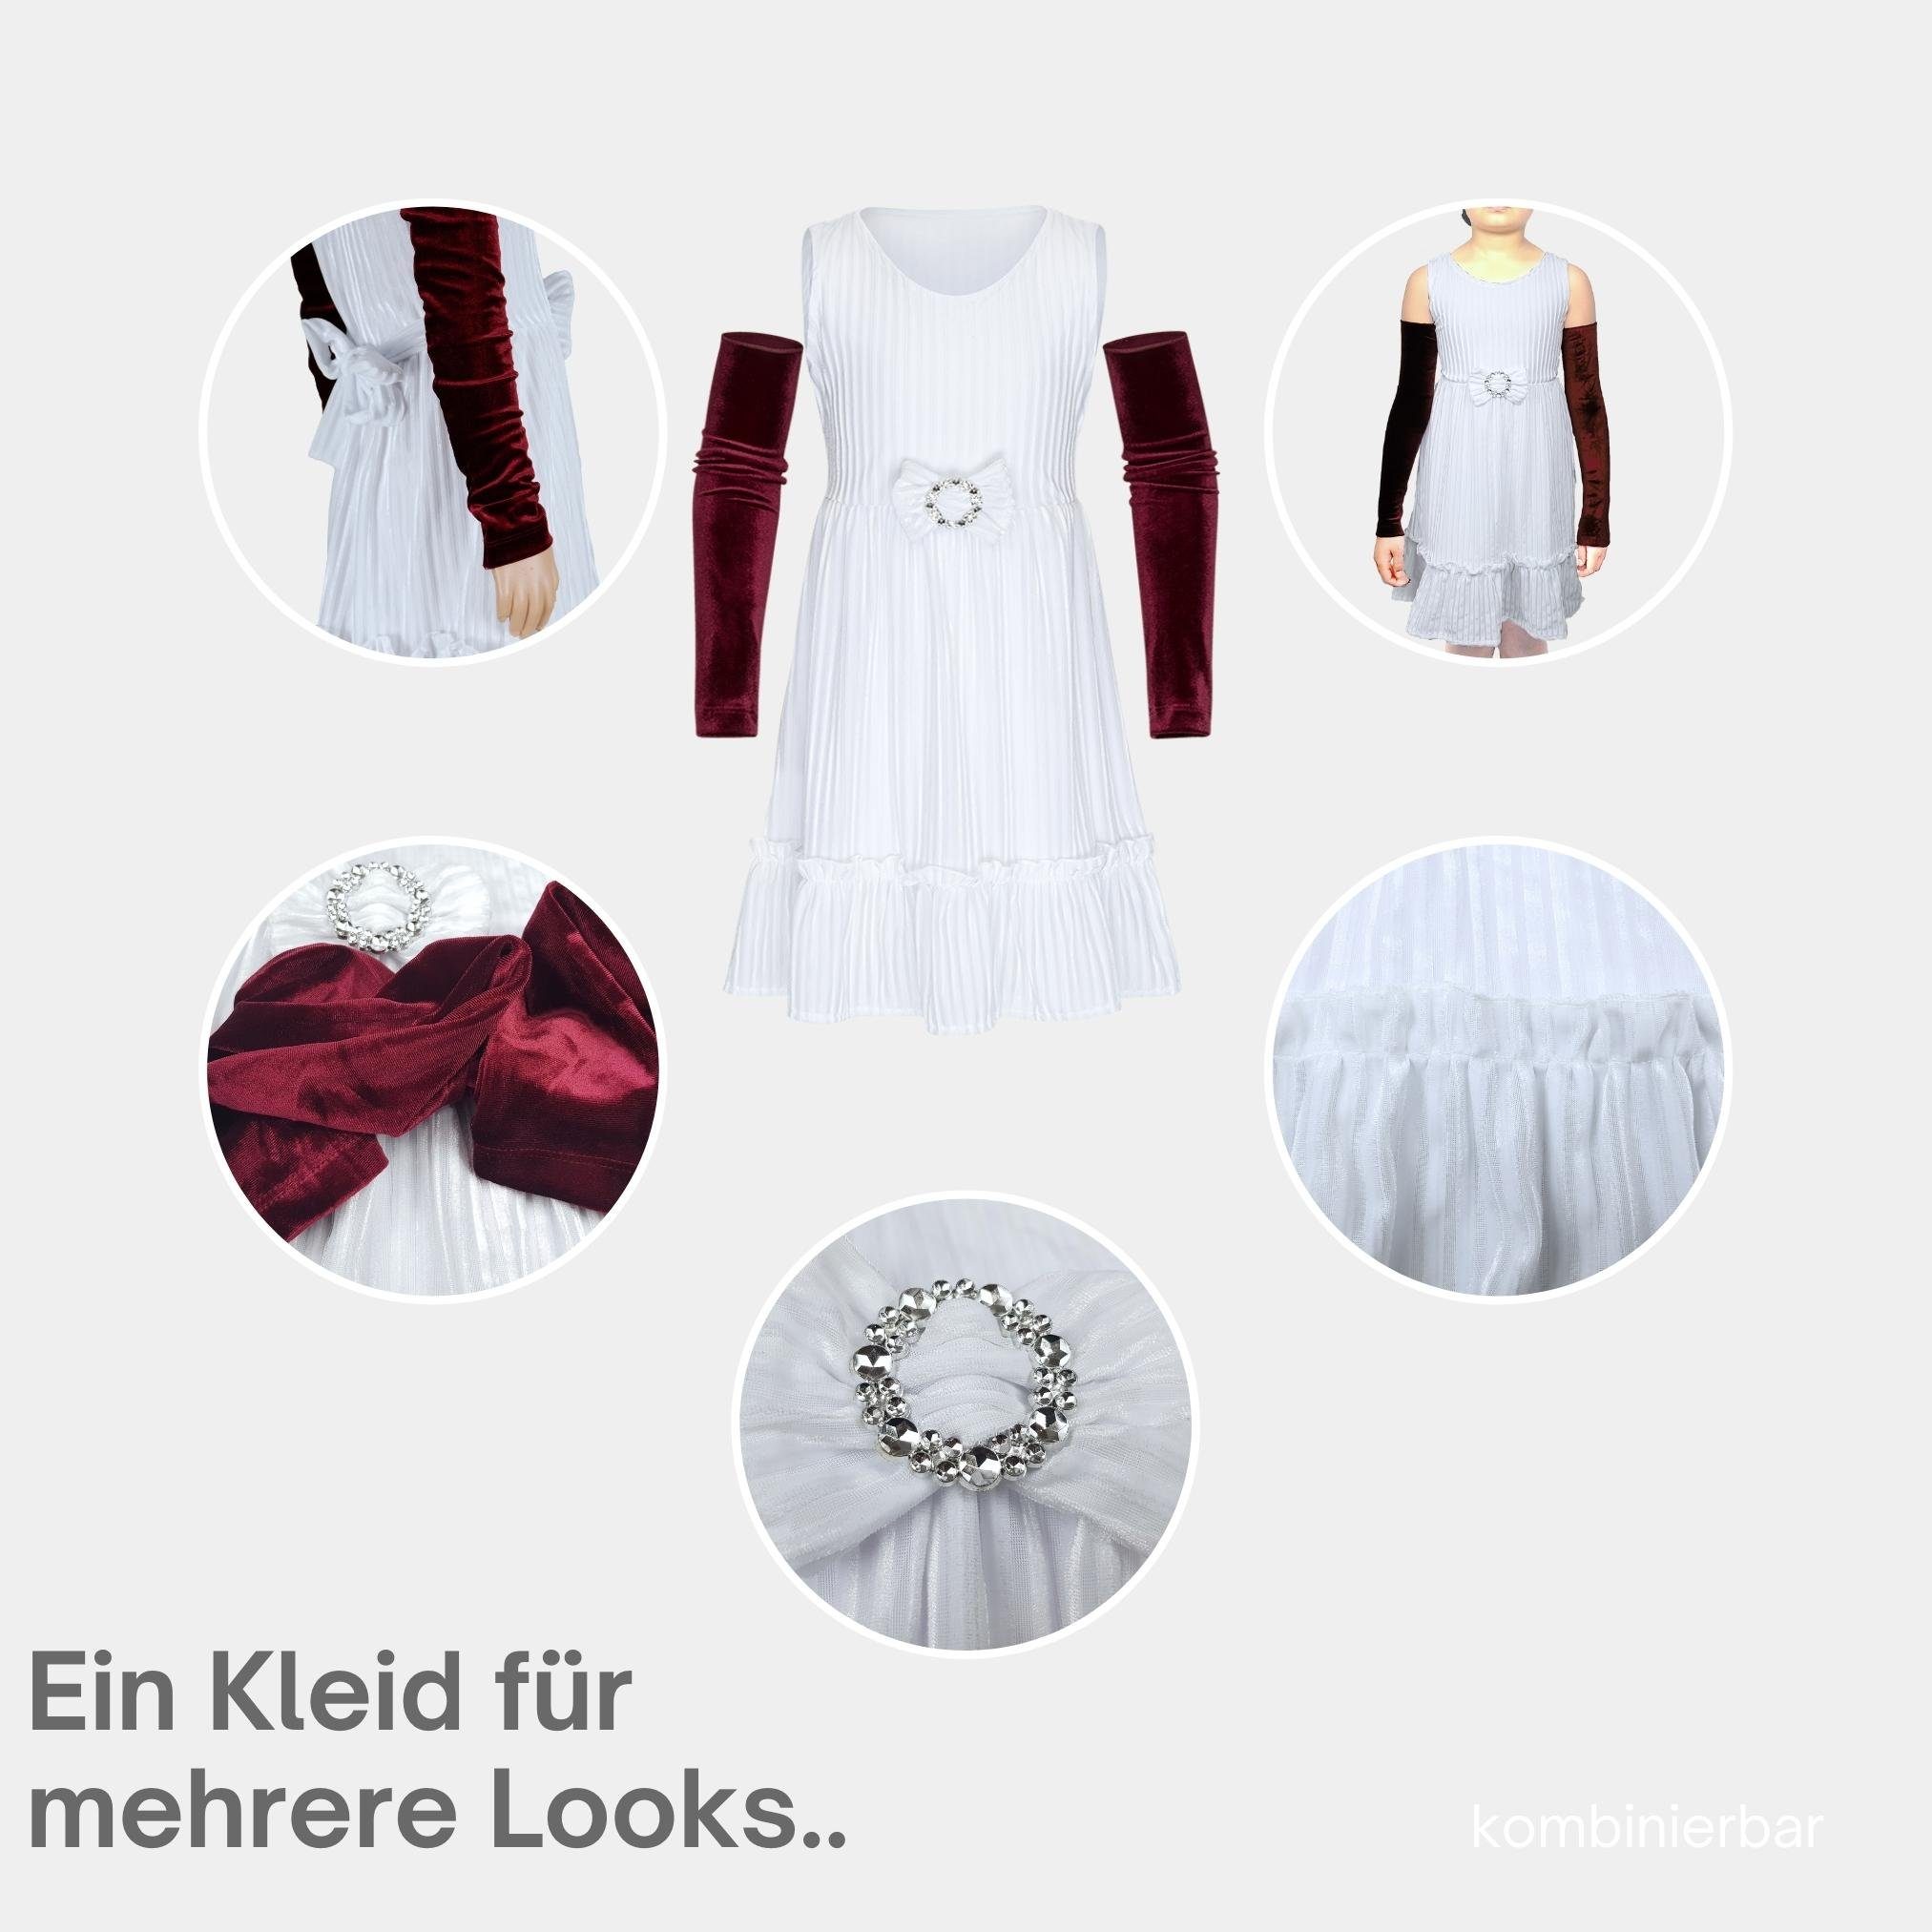 Festtagskleid Partykleid Berlinsel Weihnachtsfest in weiß wie Abendkleid für Samtkleid festliche Hochzeit, 1 mit Anlässe 2 Geburtstag, Mädchen Armstulpen